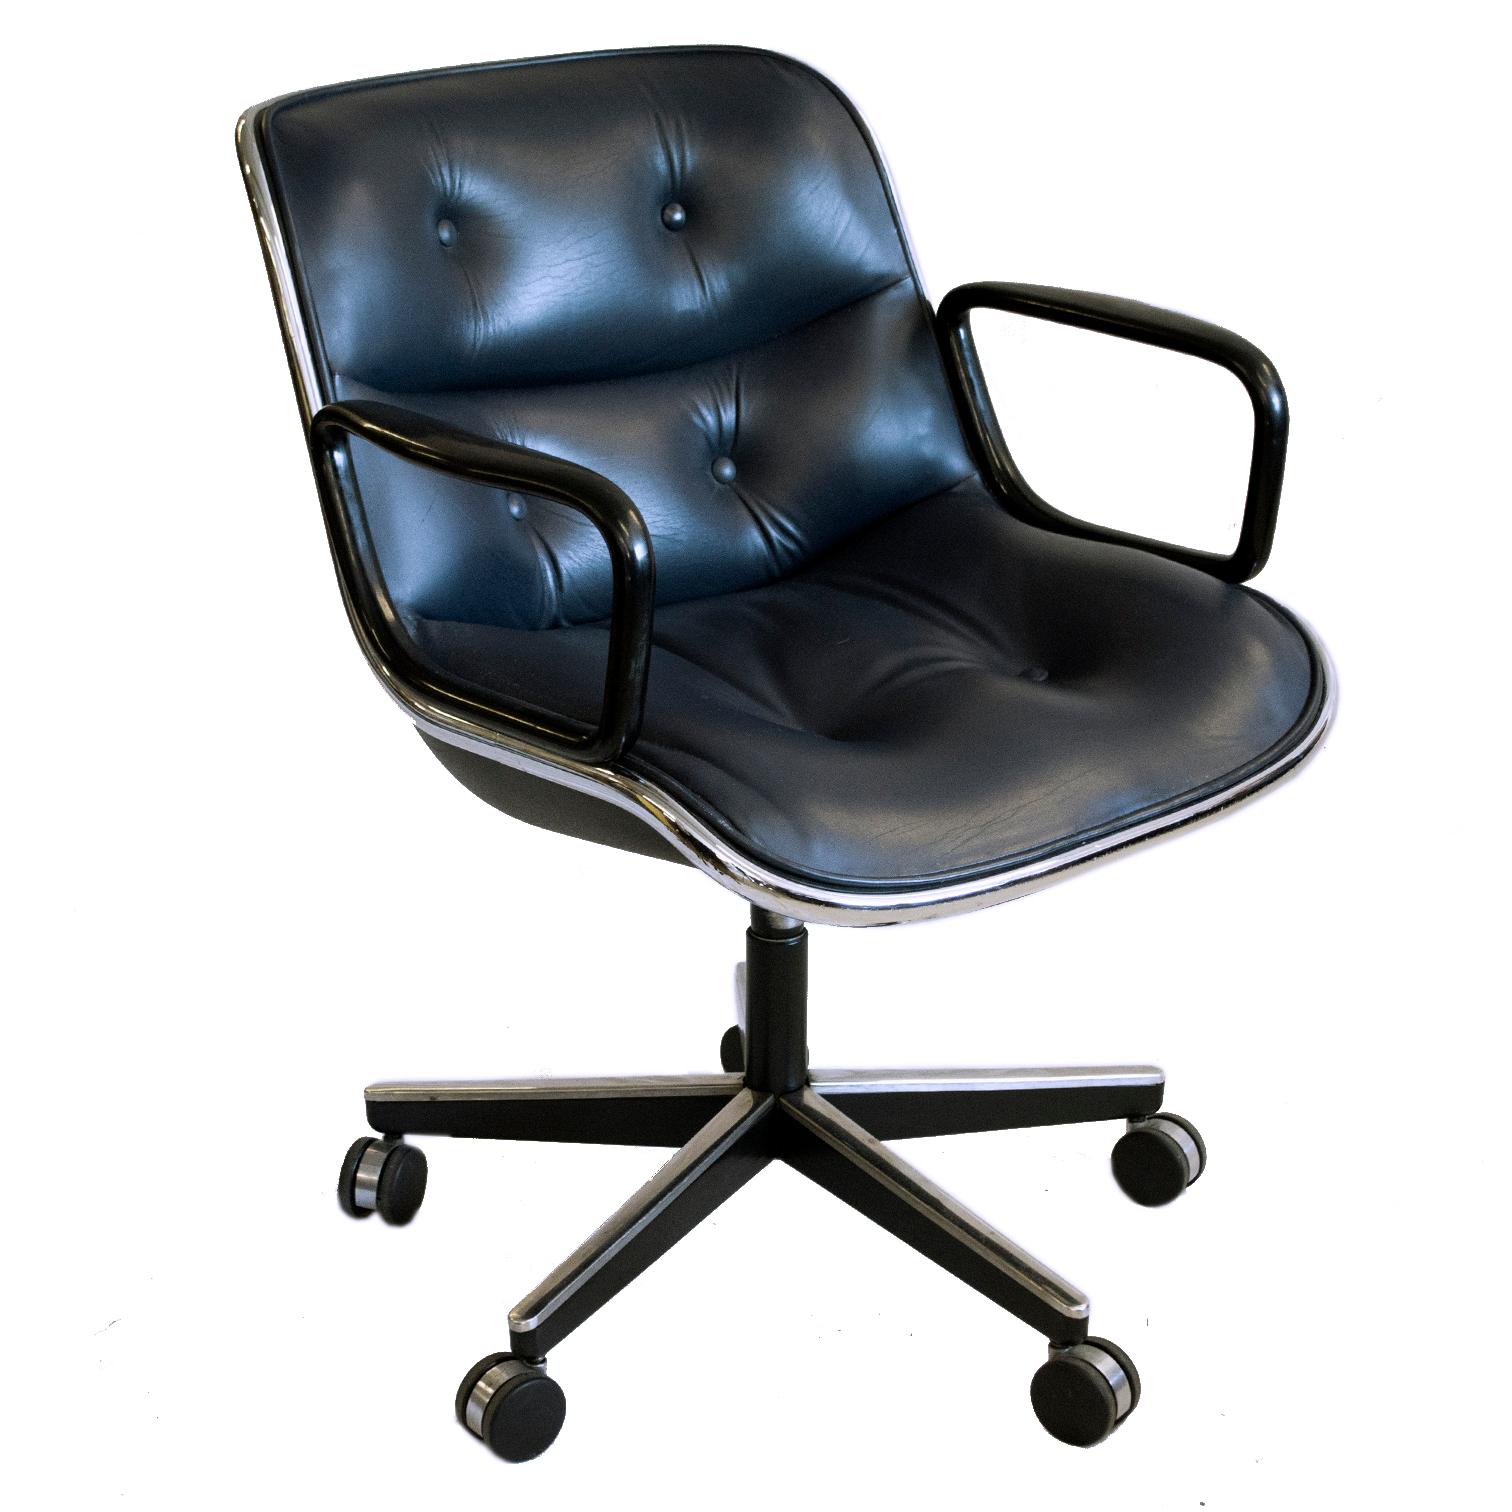 Nous proposons le fauteuil de direction classique Condit dans son cuir noir d'origine, sa structure en acier et son piètement vintage à 4 branches, en très bon état.

Charles Pollock était un maître du design dont le travail était soutenu par